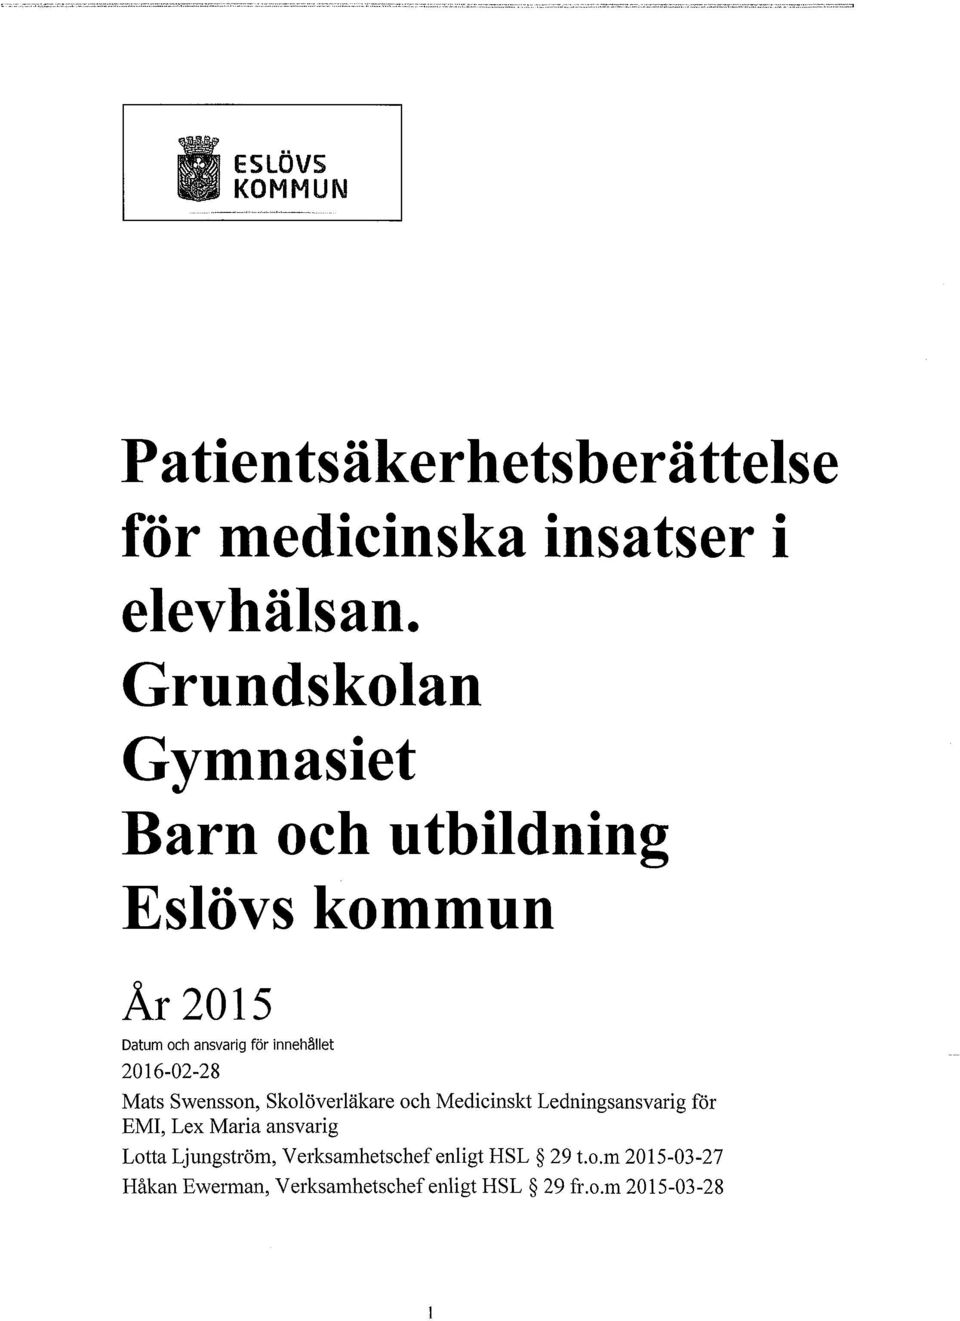 2016-02-28 Mats Swensson, Skolöverläkare och Medicinskt Ledningsansvarig för EMI, Lex Maria ansvarig